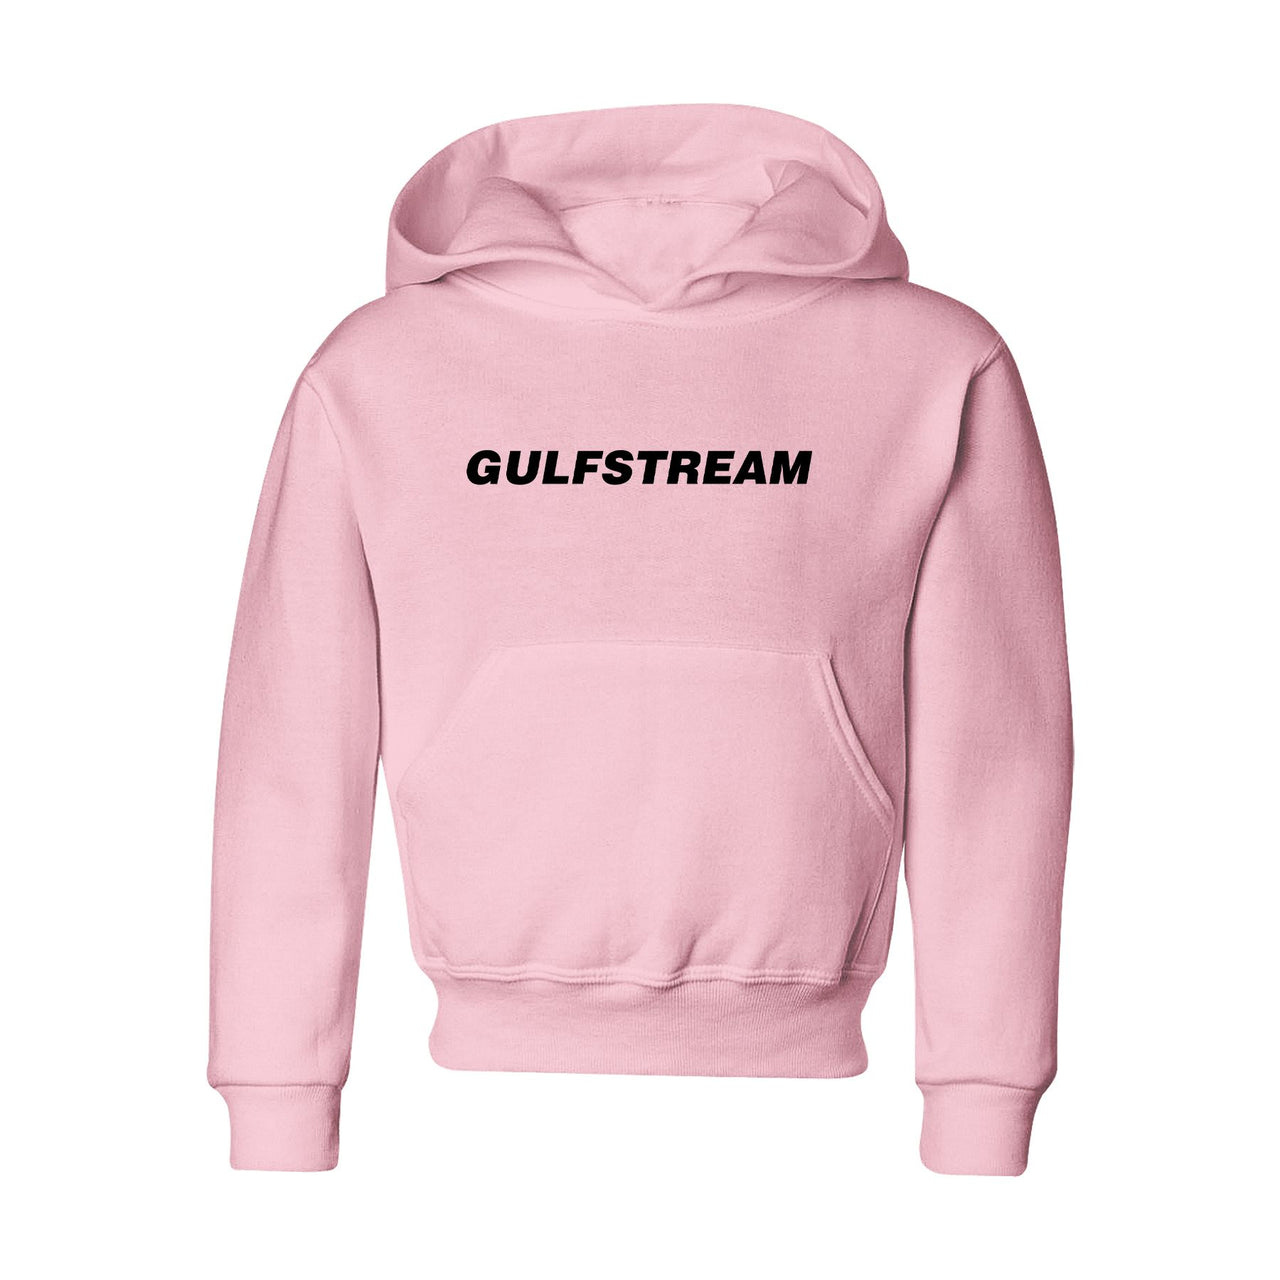 Gulfstream & Text Designed "CHILDREN" Hoodies